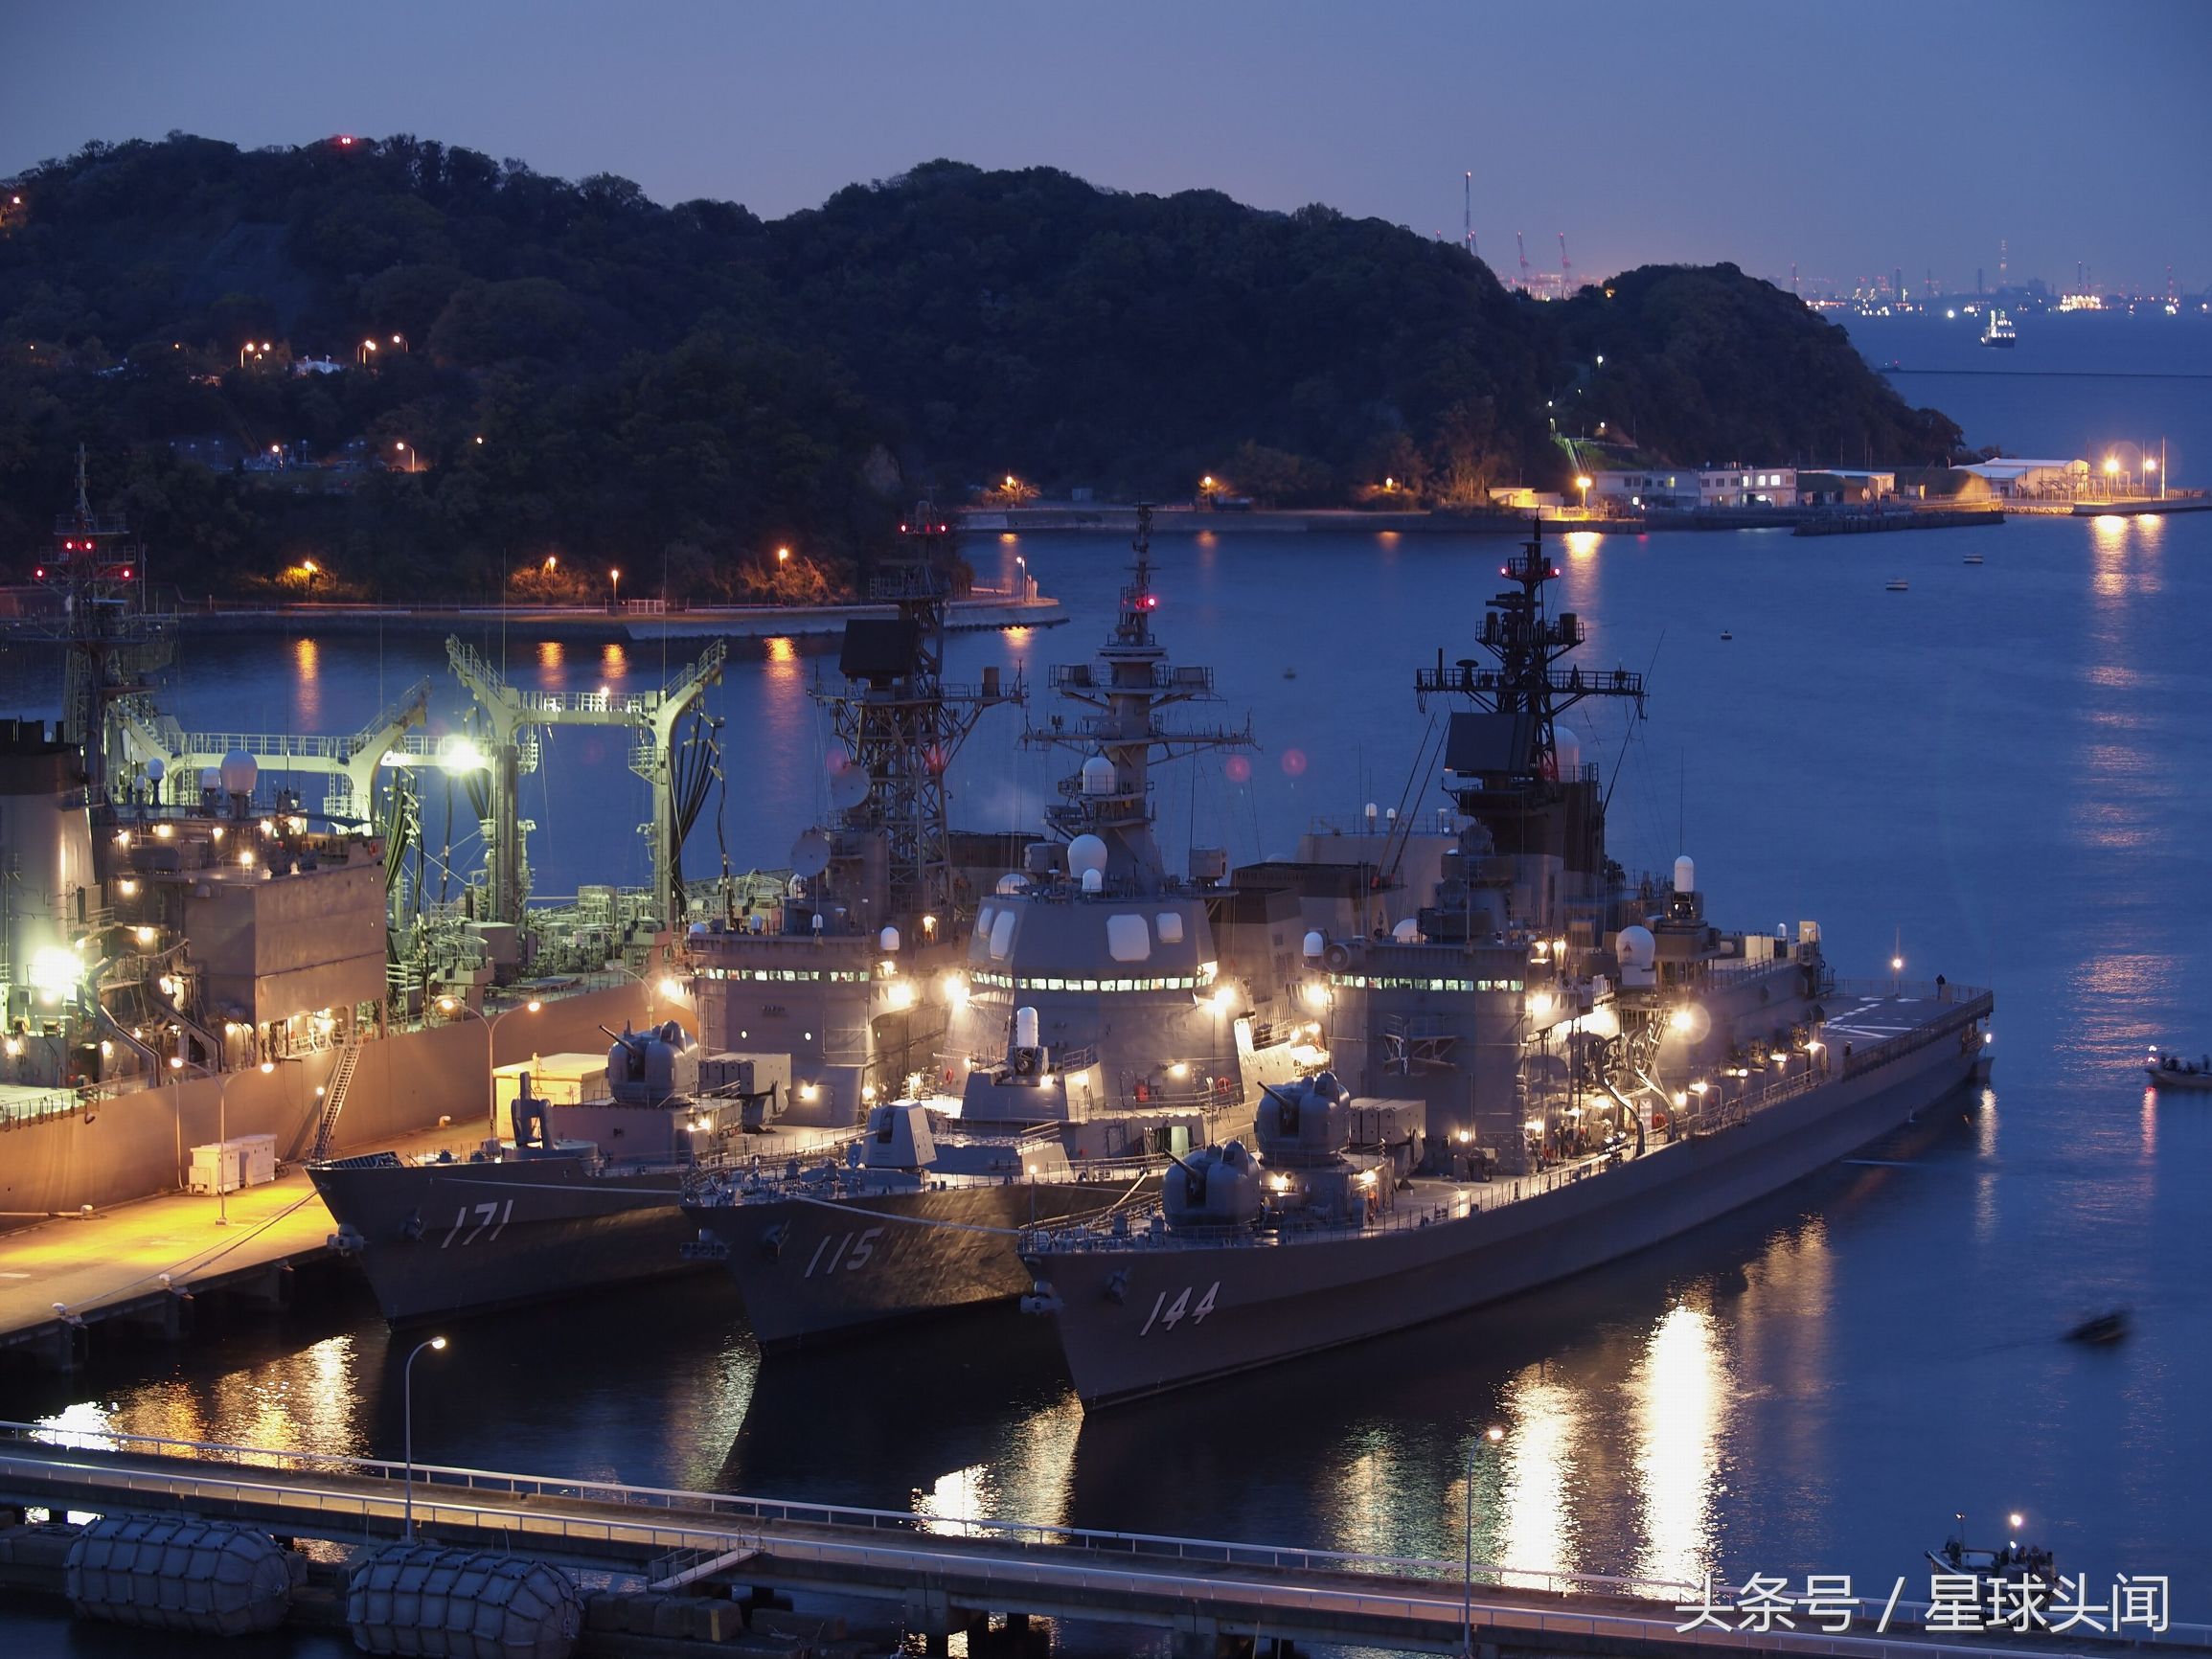 日本军港夜间照片引来网友热议,众多人赞叹其拍摄的十分精美,不得不说